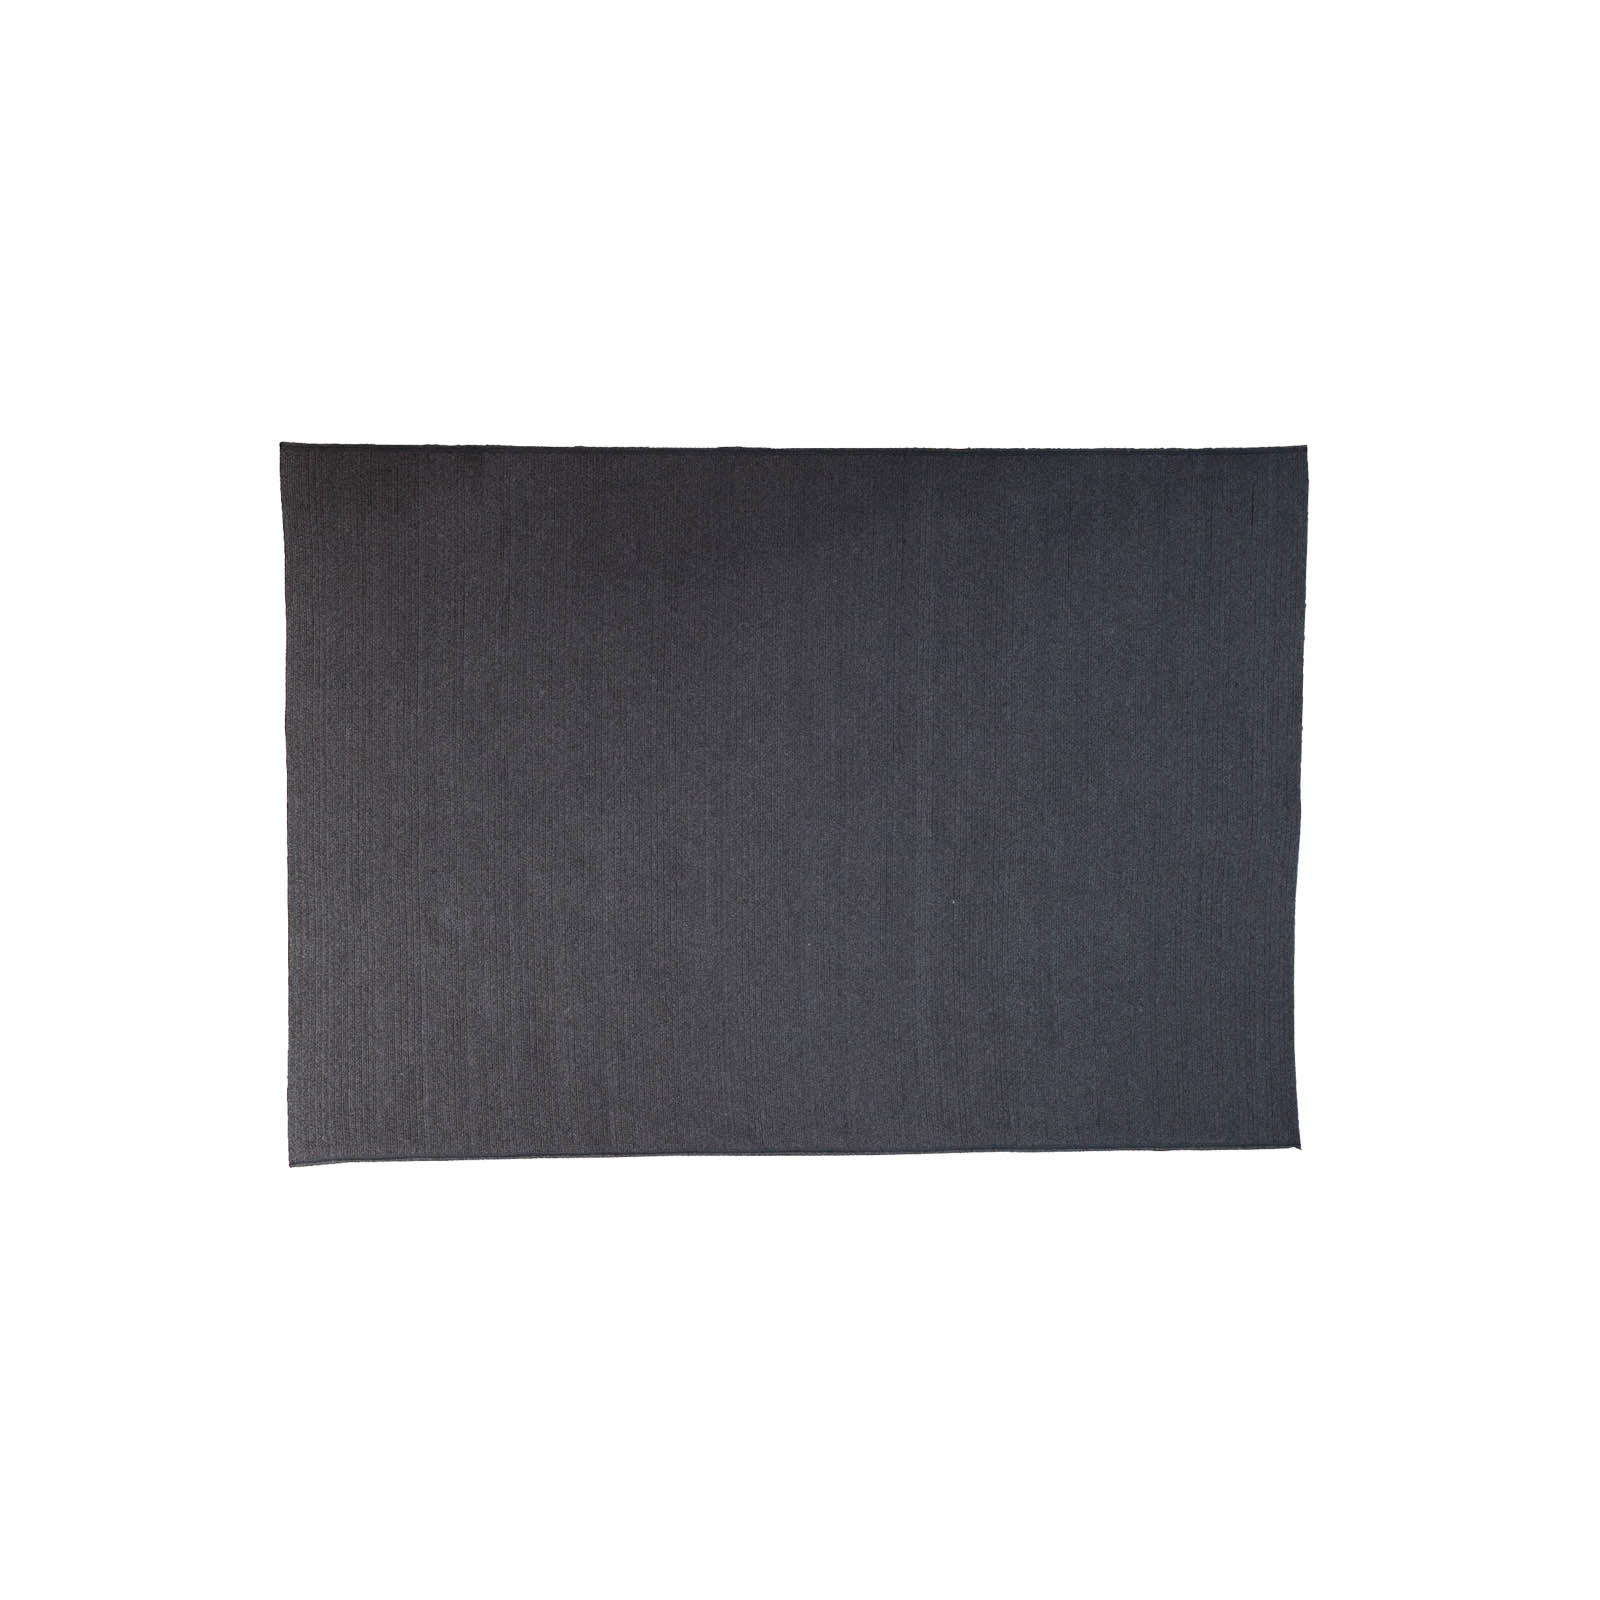 Circle Teppich 300x200 cm aus Cane-line Soft Rope in Dark Grey